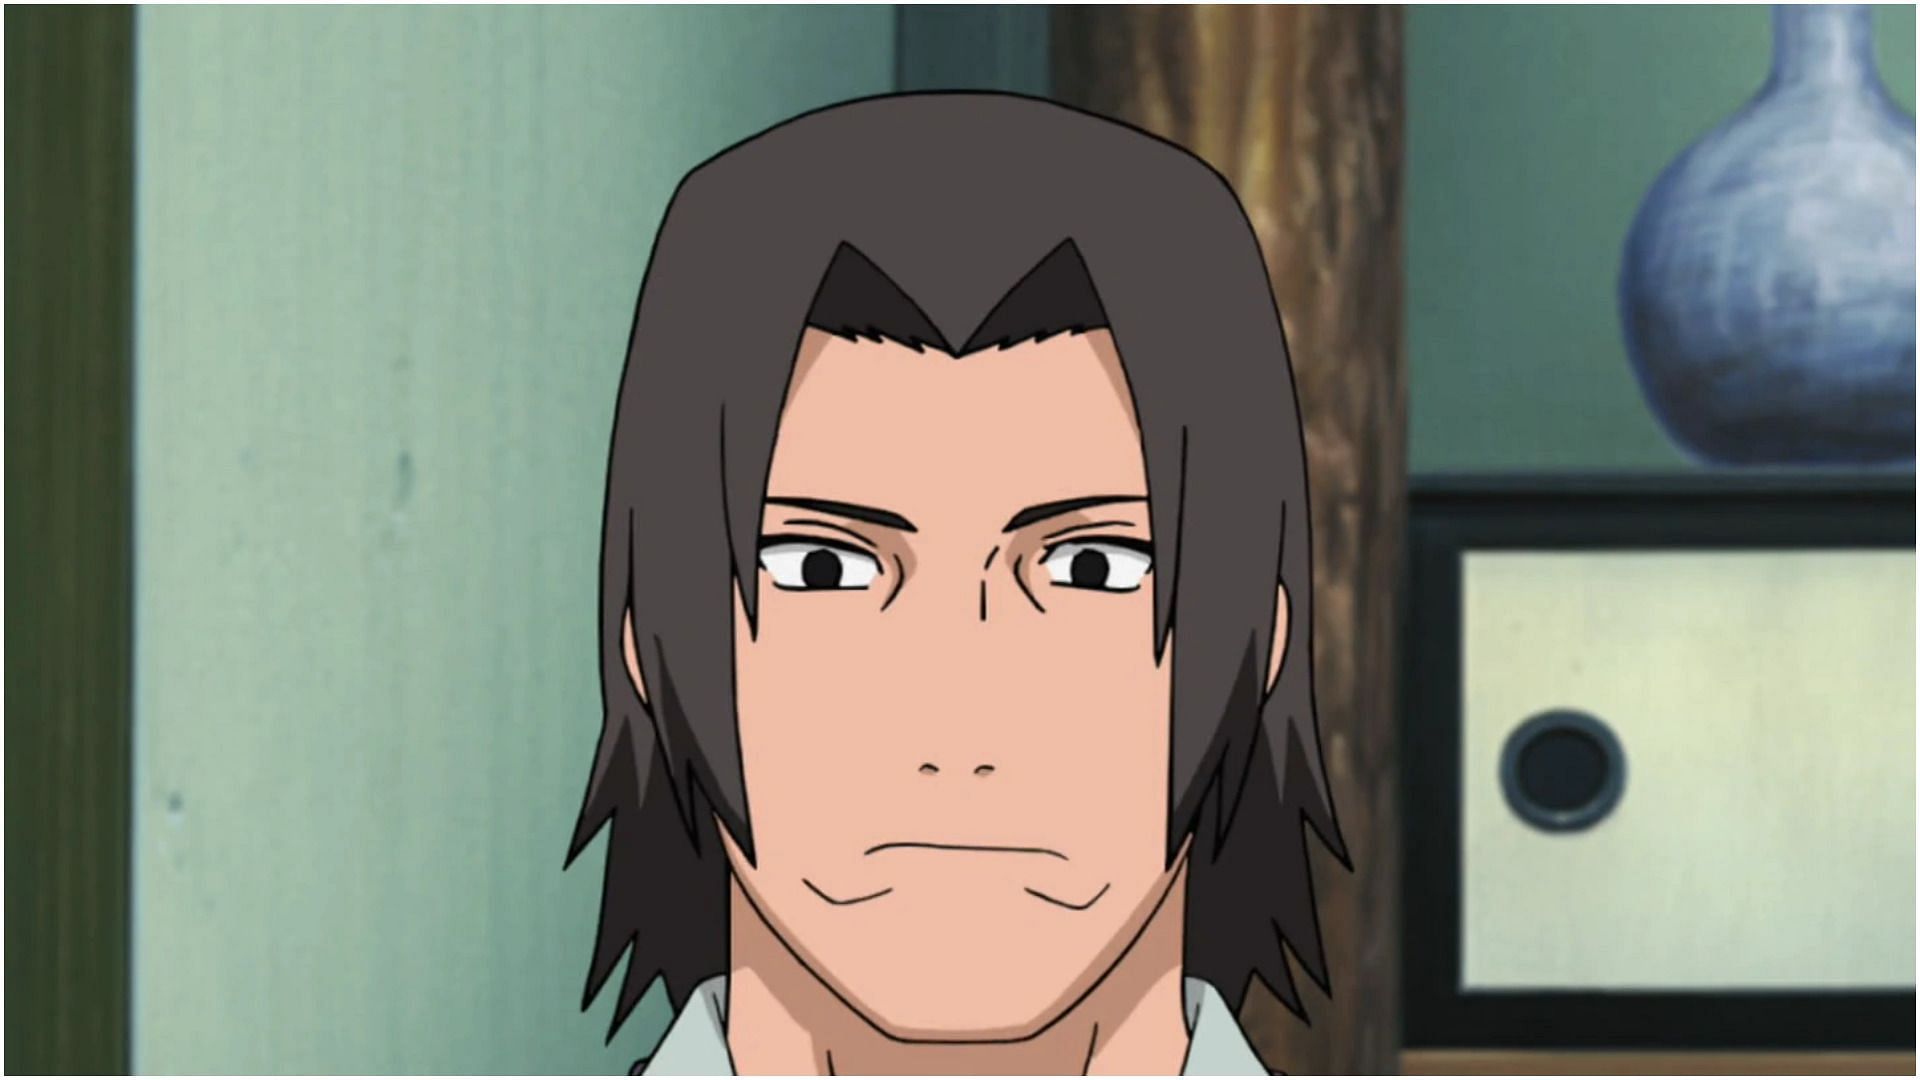 Fugaku Uchiha as seen in Naruto (Image credits: Masashi Kishimoto/ Viz Media/ Shueisha/ Studio Pierrot)